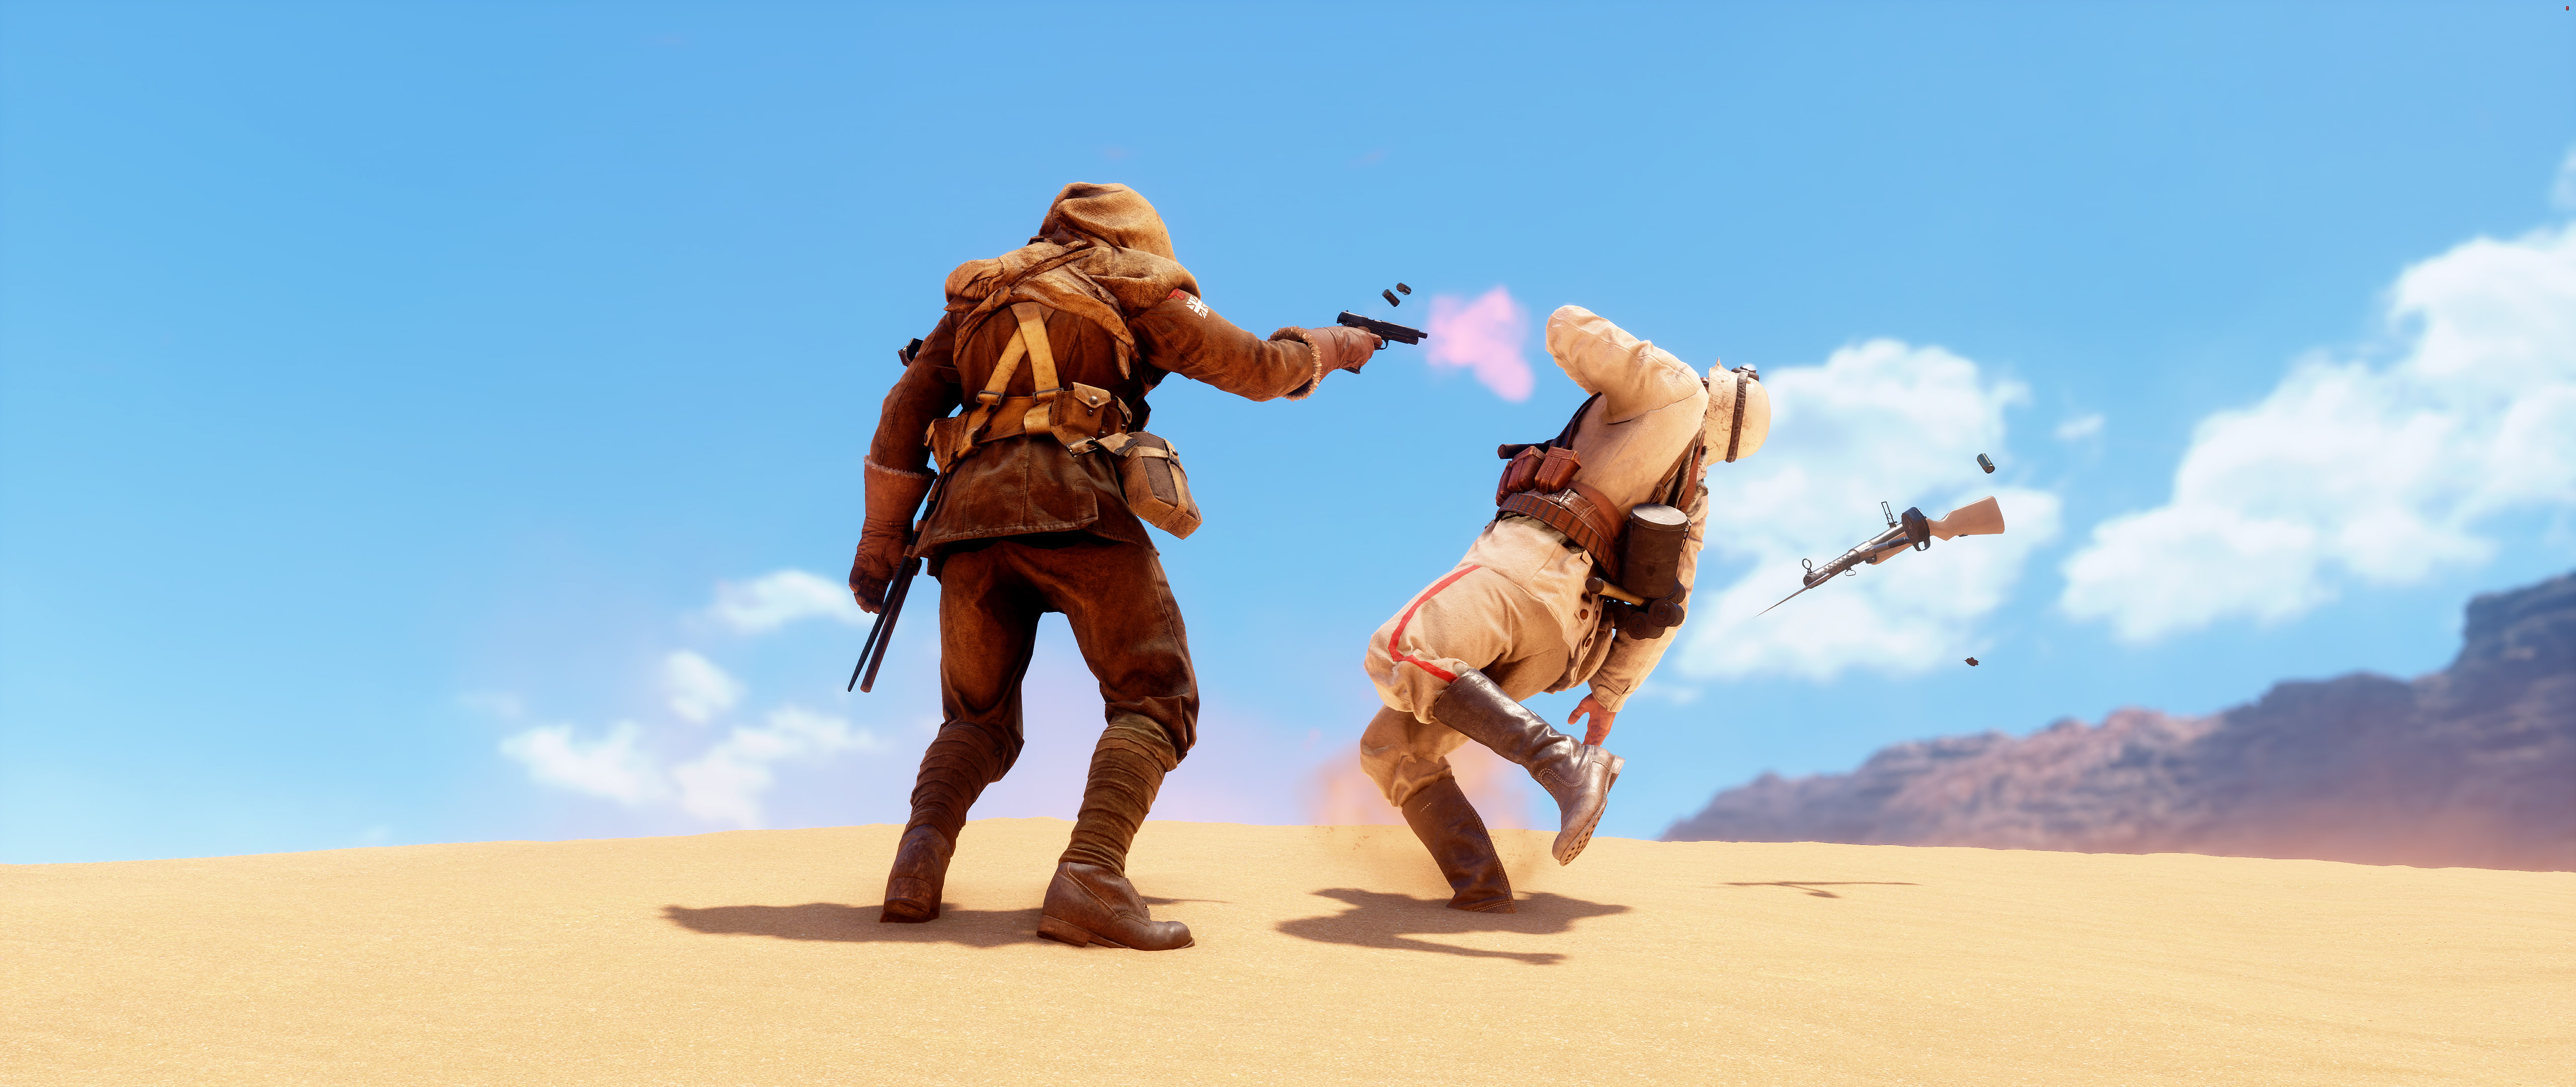 Wallpaper Battlefield Gameplay, Desert, HD, 5K, Games